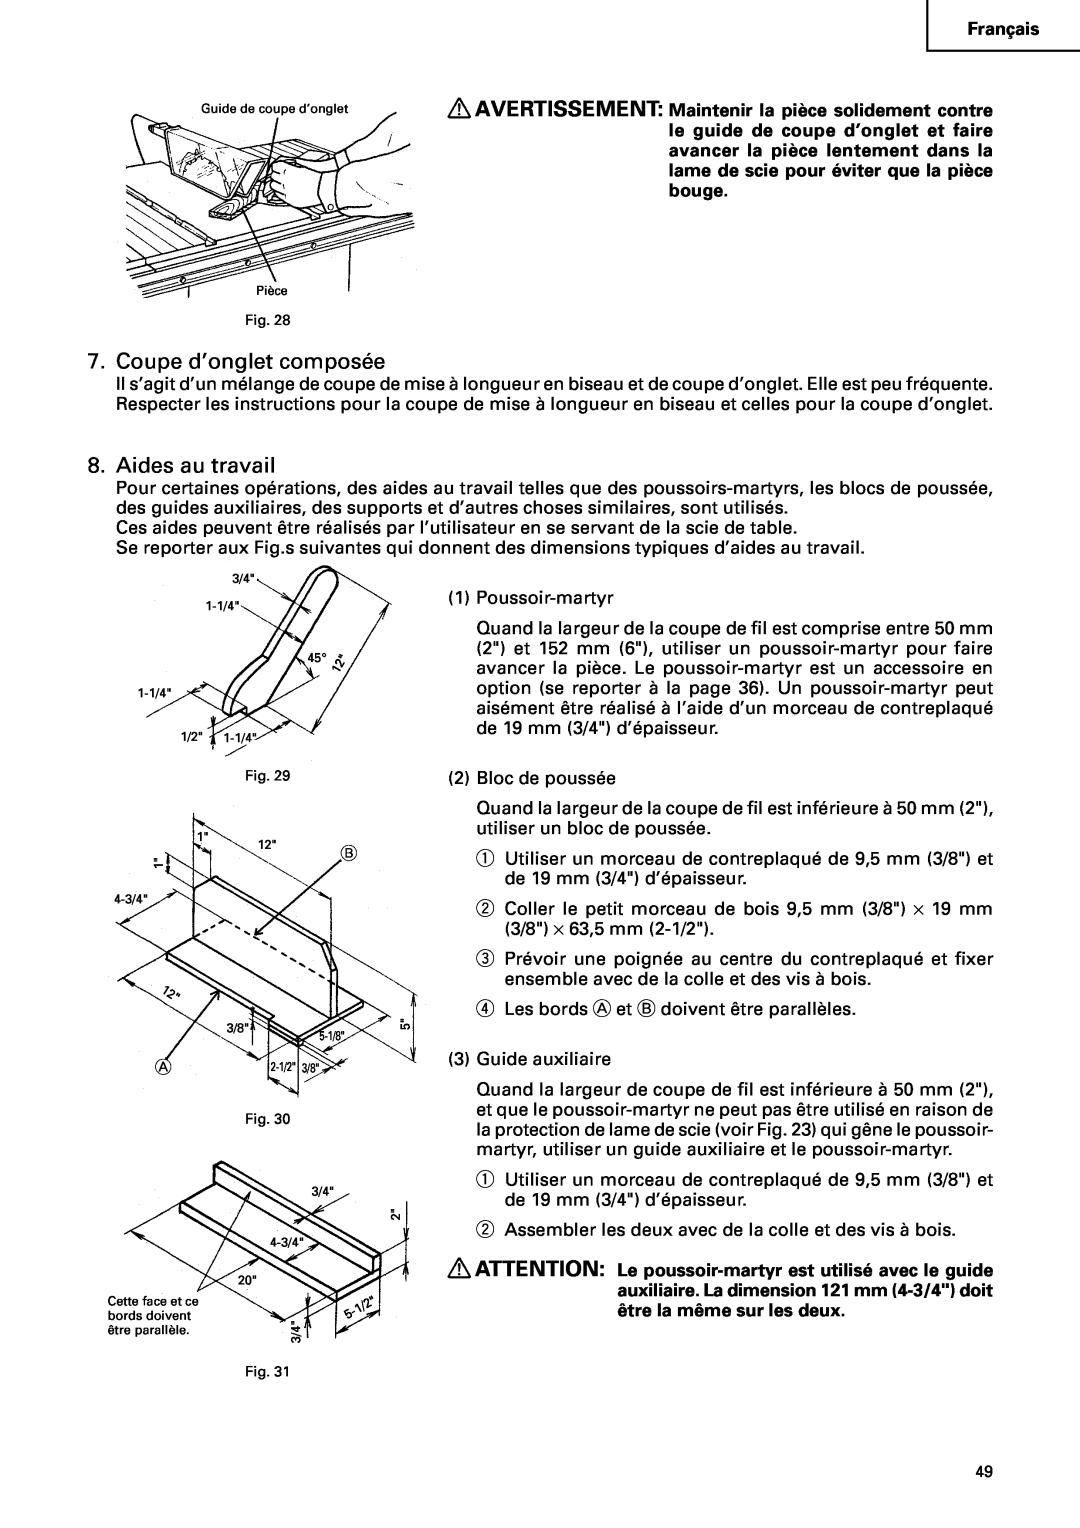 Hitachi C10RA2 instruction manual Coupe d’onglet composée, Aides au travail 